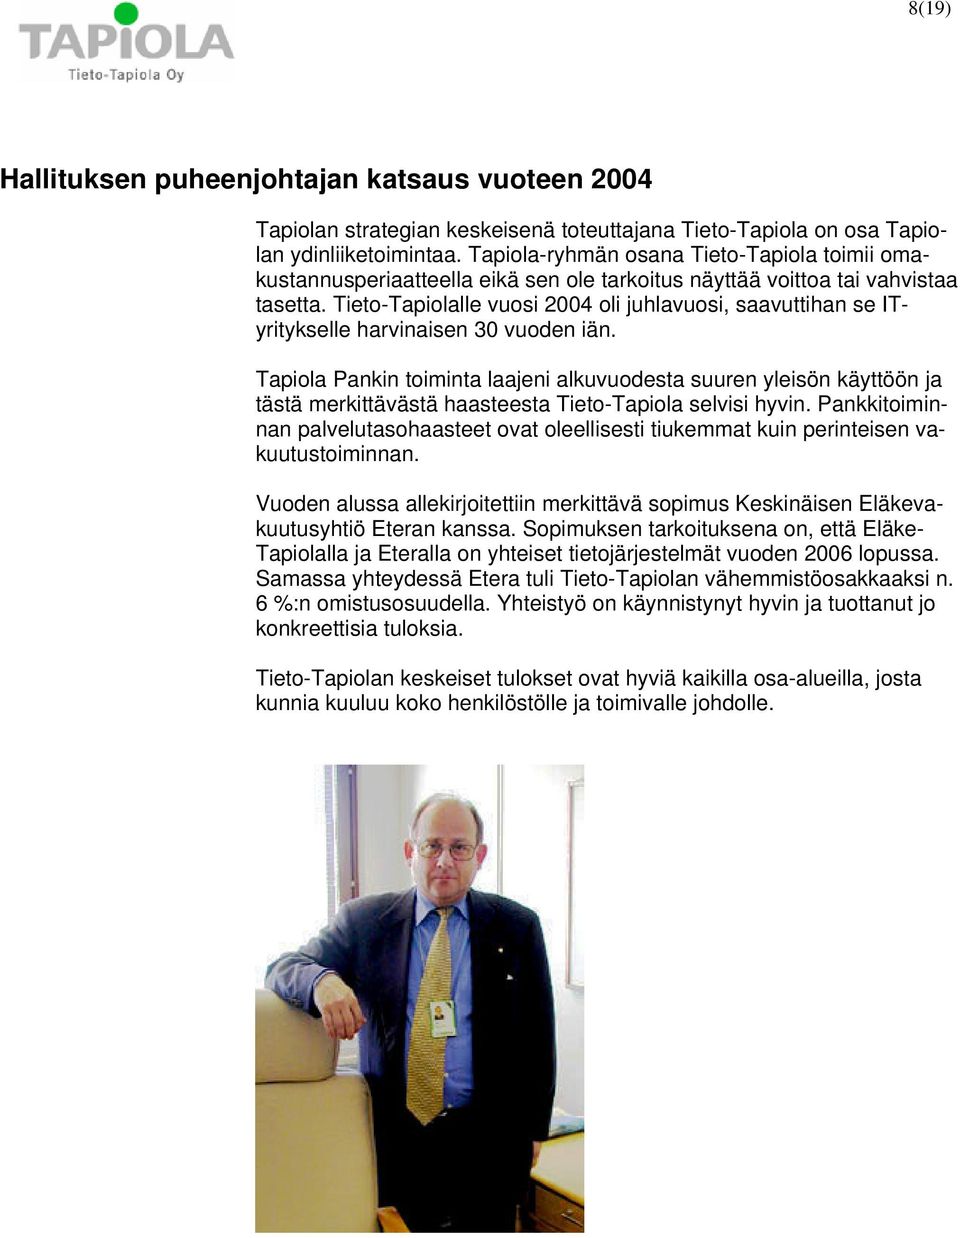 Tieto-Tapiolalle vuosi 2004 oli juhlavuosi, saavuttihan se ITyritykselle harvinaisen 30 vuoden iän.